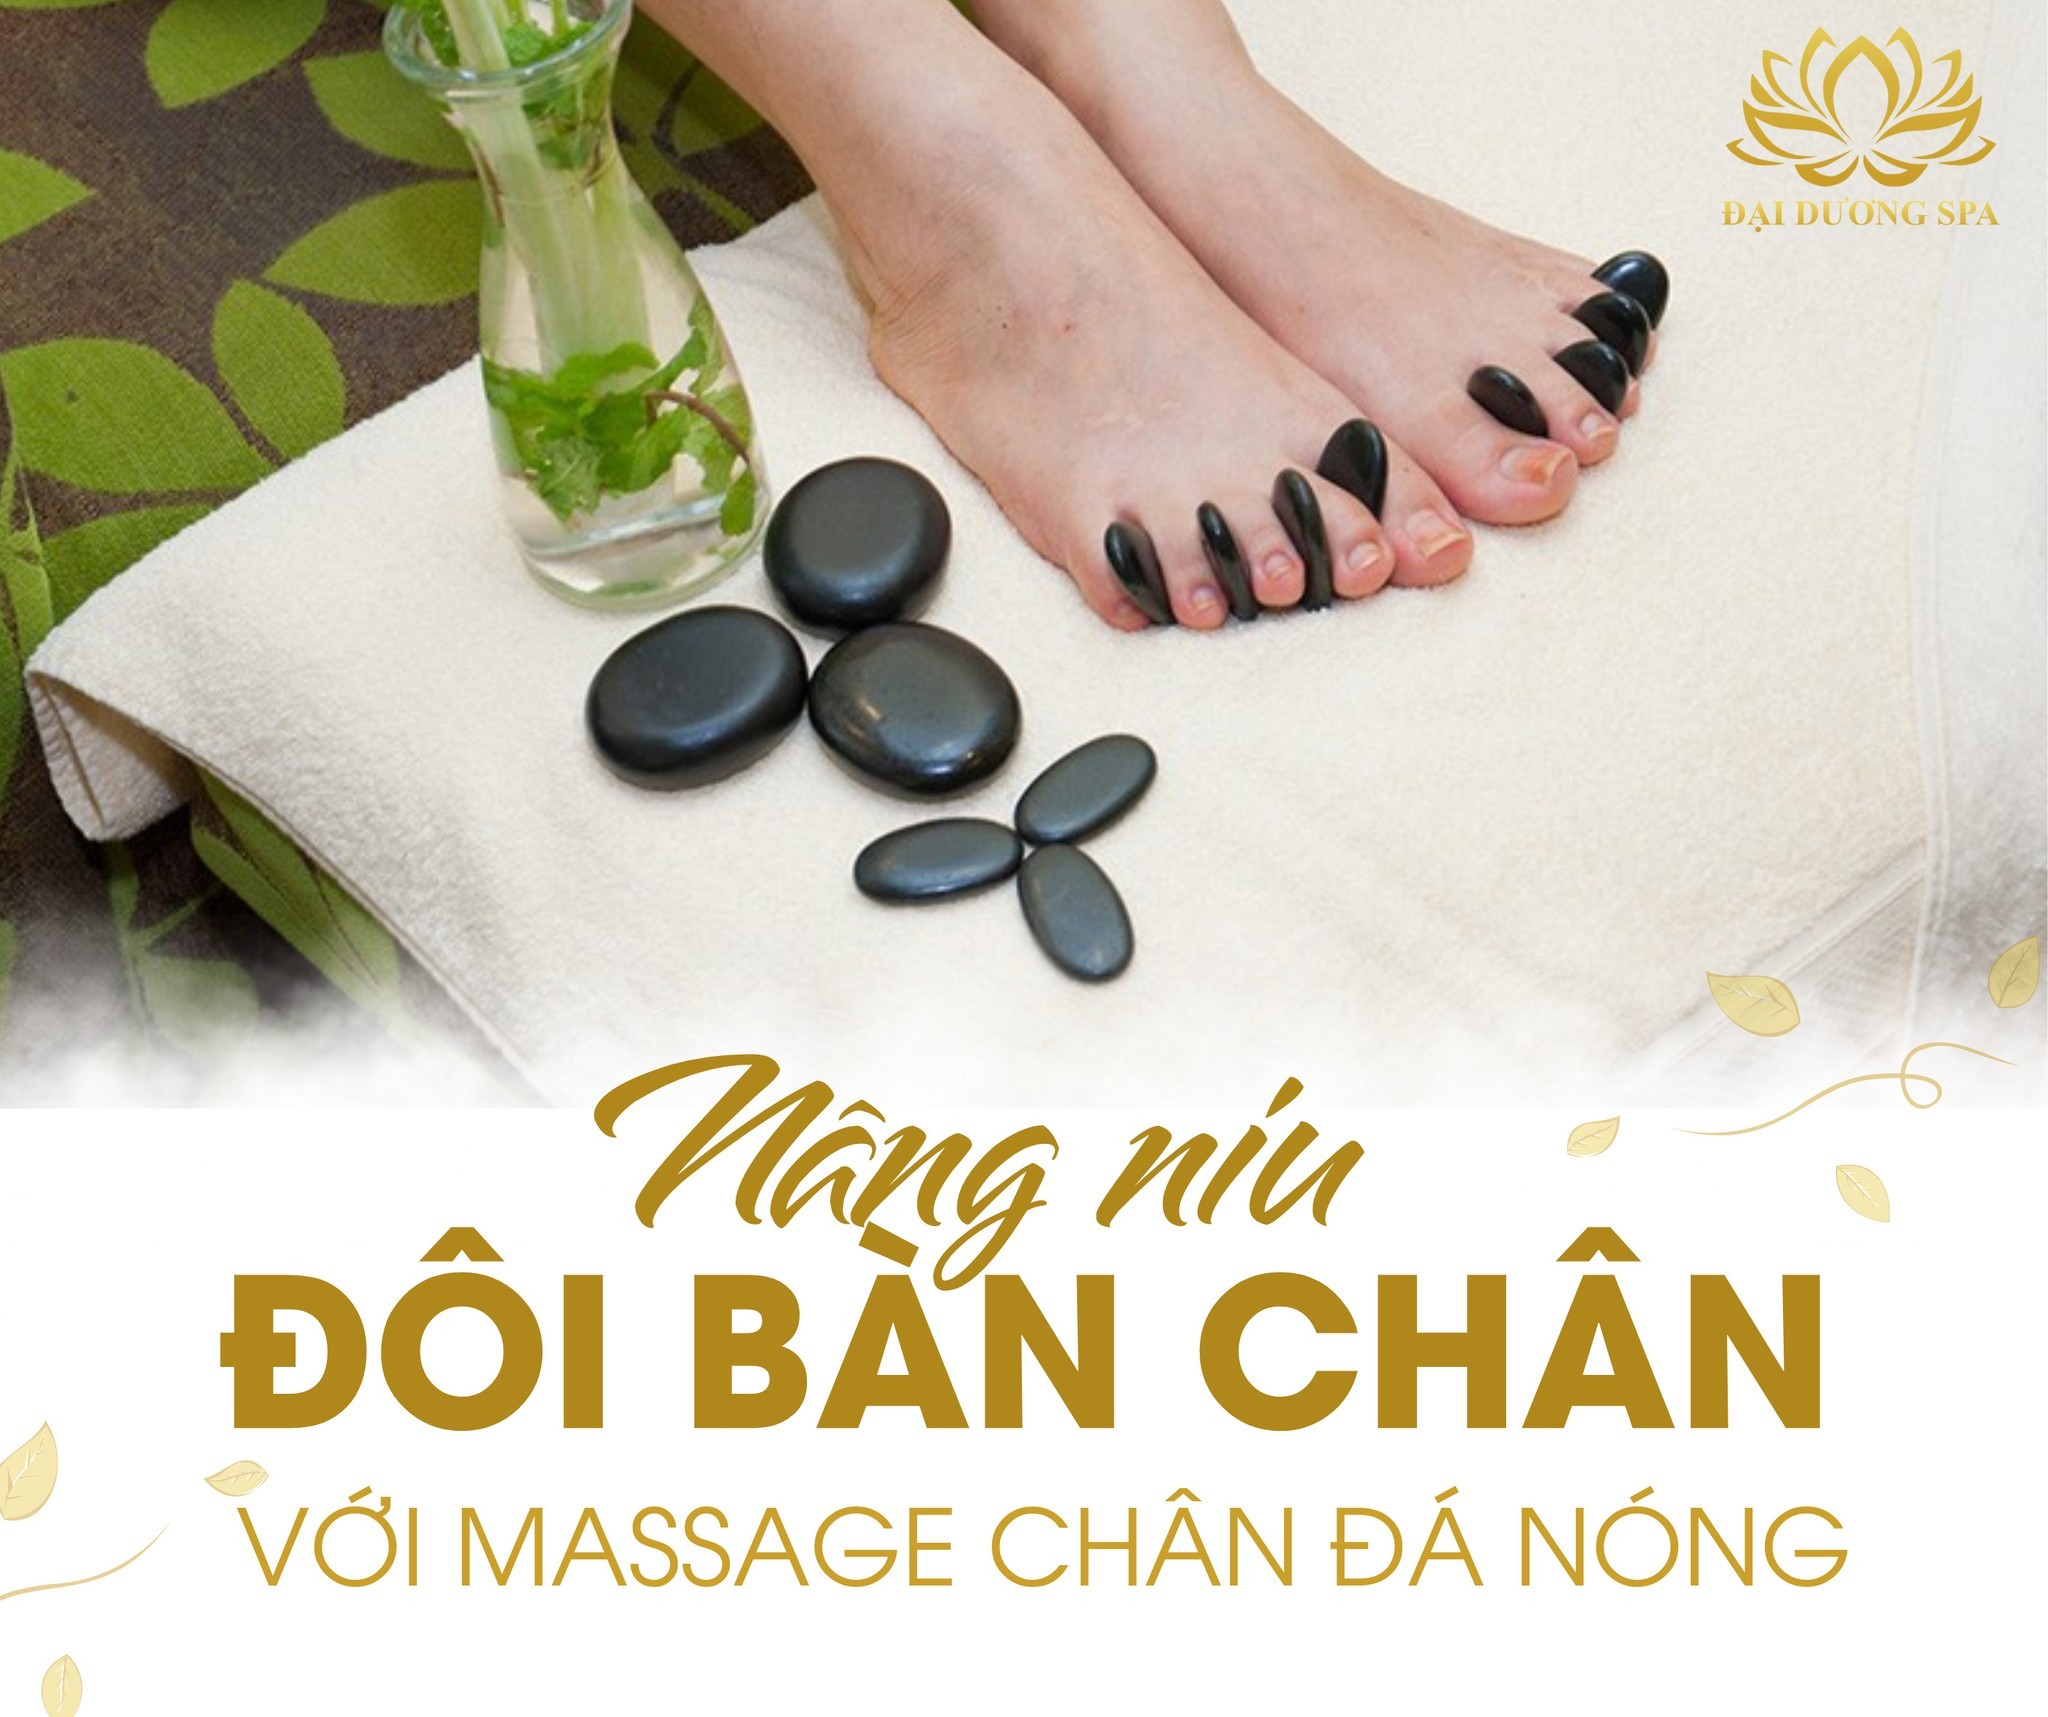 Bài viết quảng cáo massage - Massage chân đá nóng 